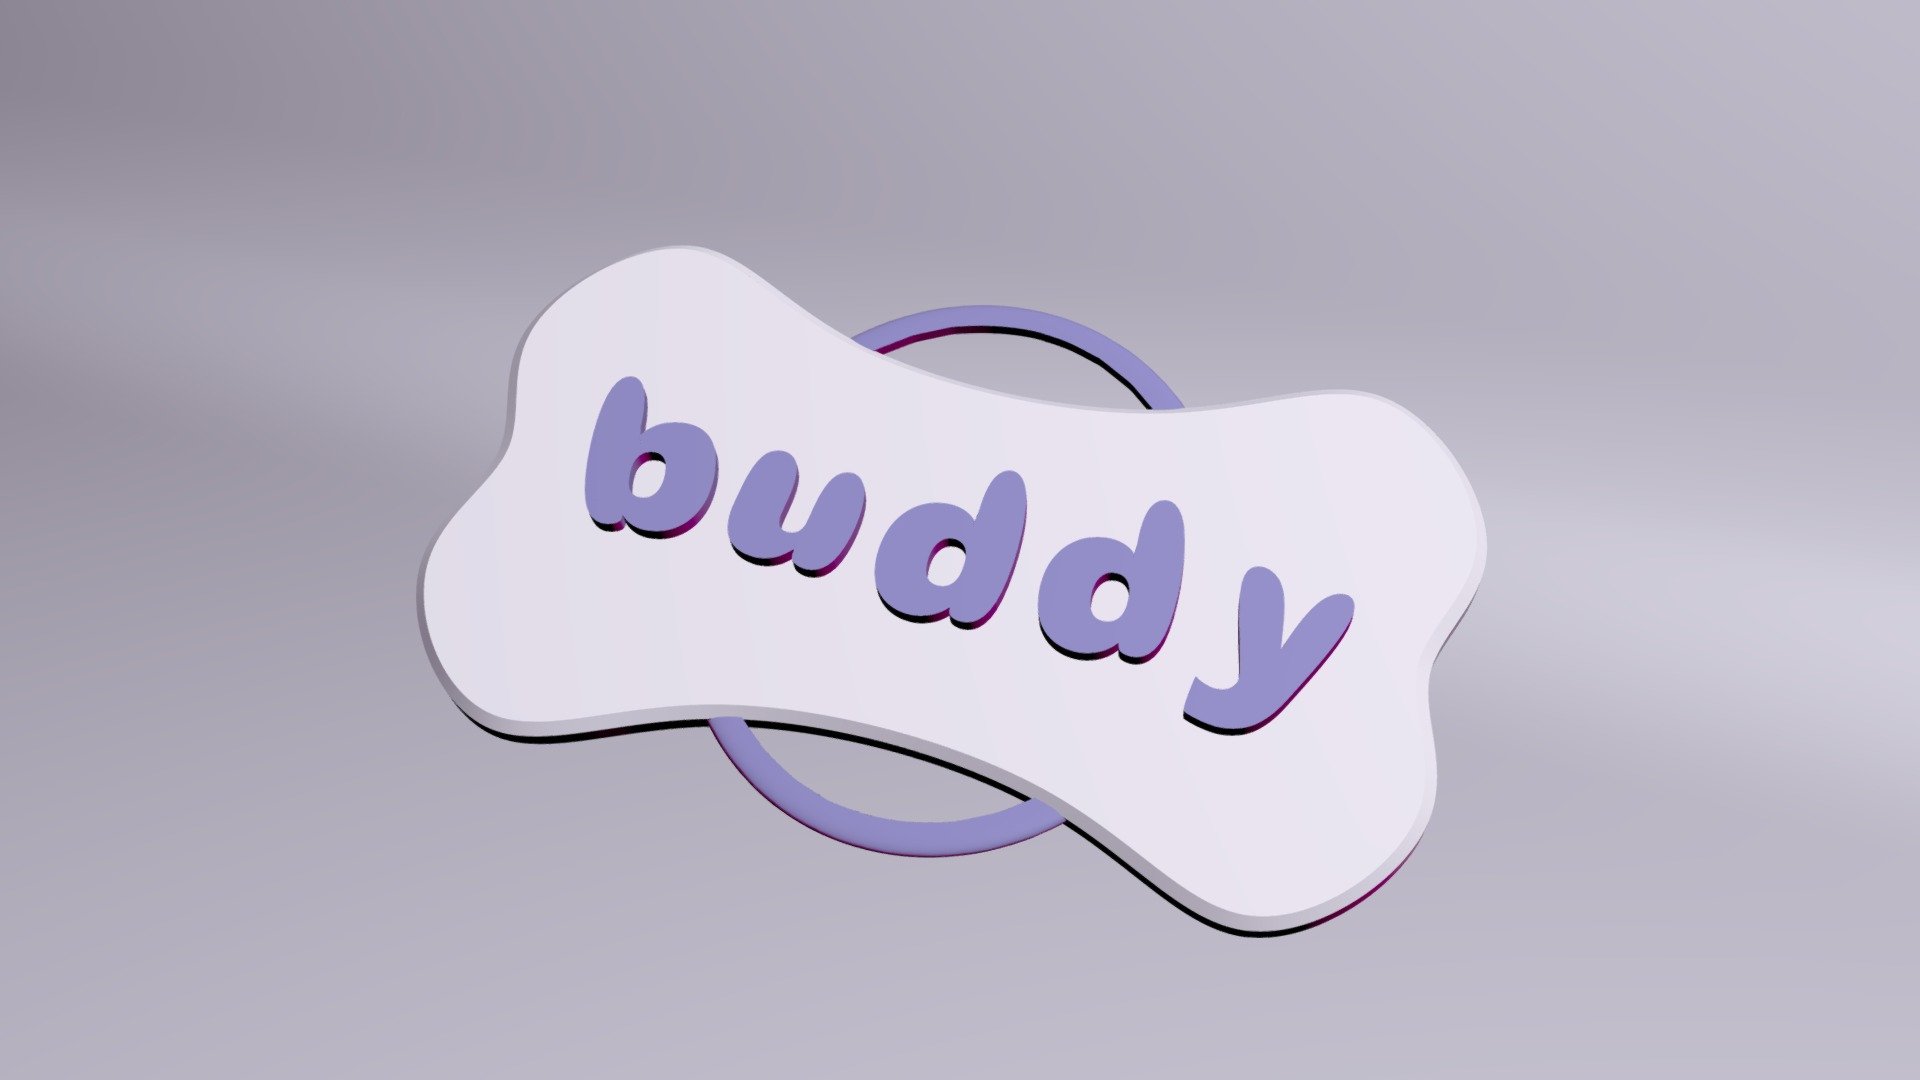 Buddy Dog Tag